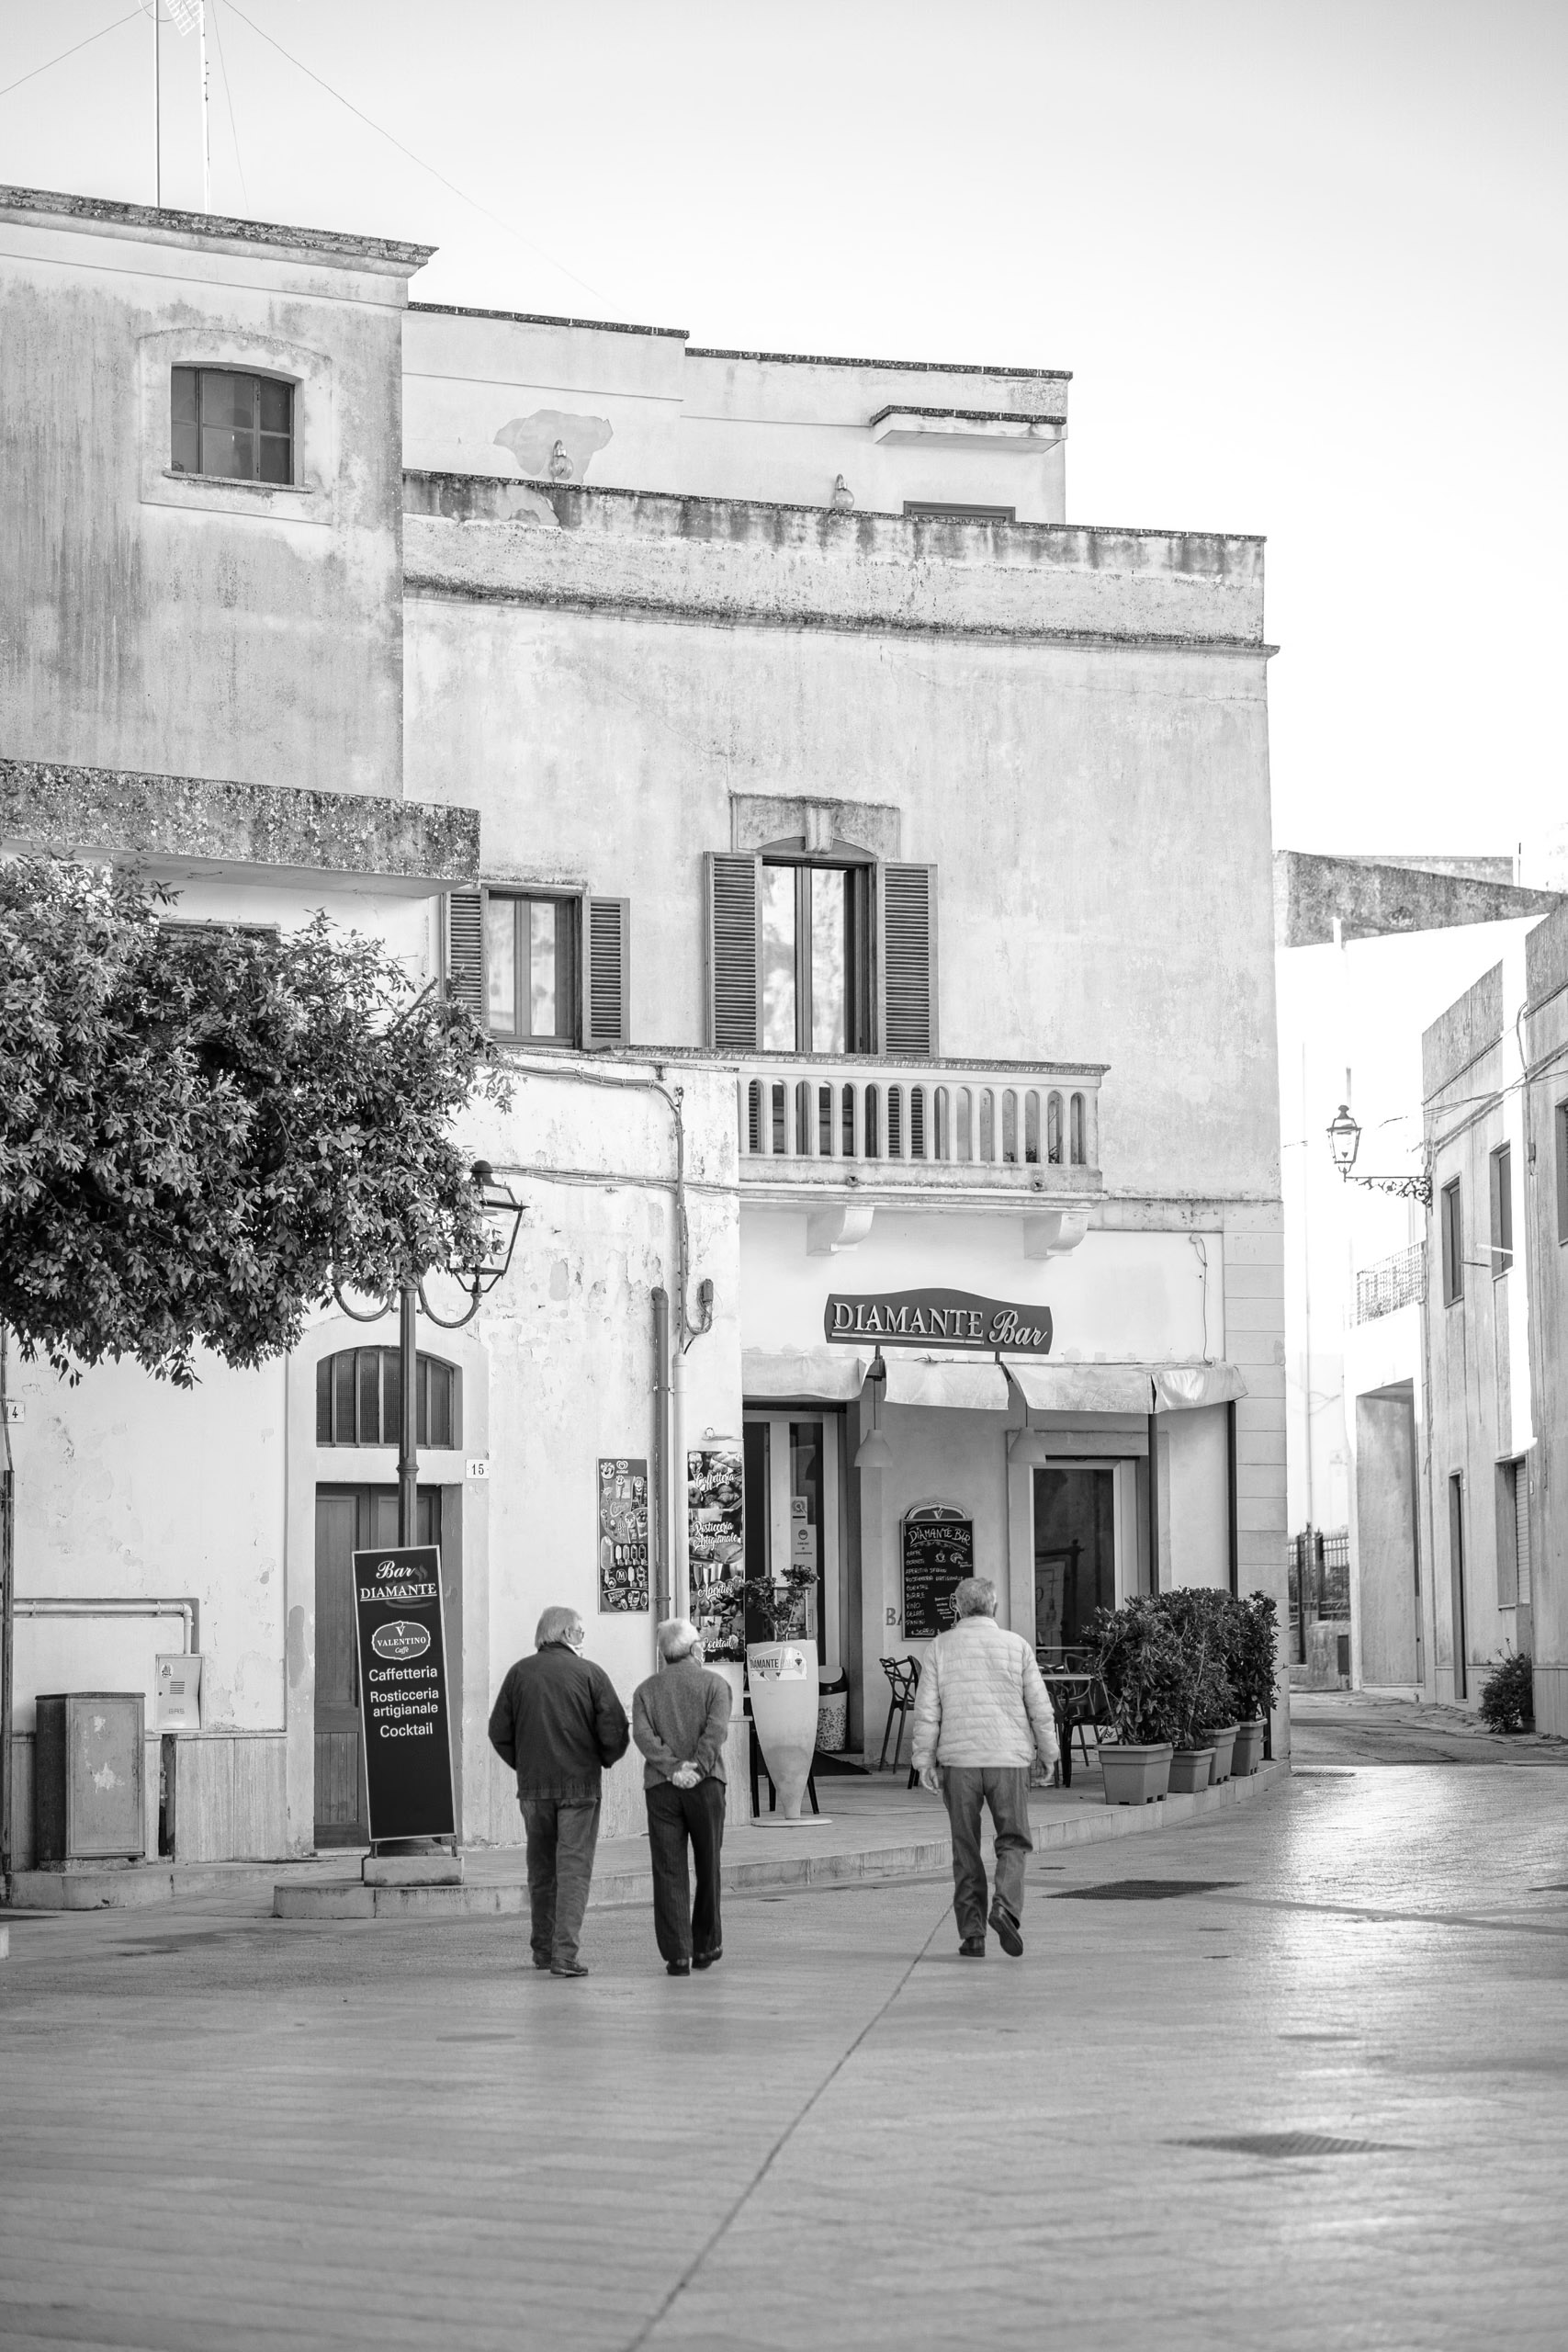 Drei ältere Männer gehen gemeinsam durch eine malerische Straße, die von traditionellen Gebäuden gesäumt ist, darunter ein Geschäft namens „Diamante Shoes“. Die Szene fängt eine heitere Altstadtatmosphäre ein. © Fotografie Tomas Rodriguez